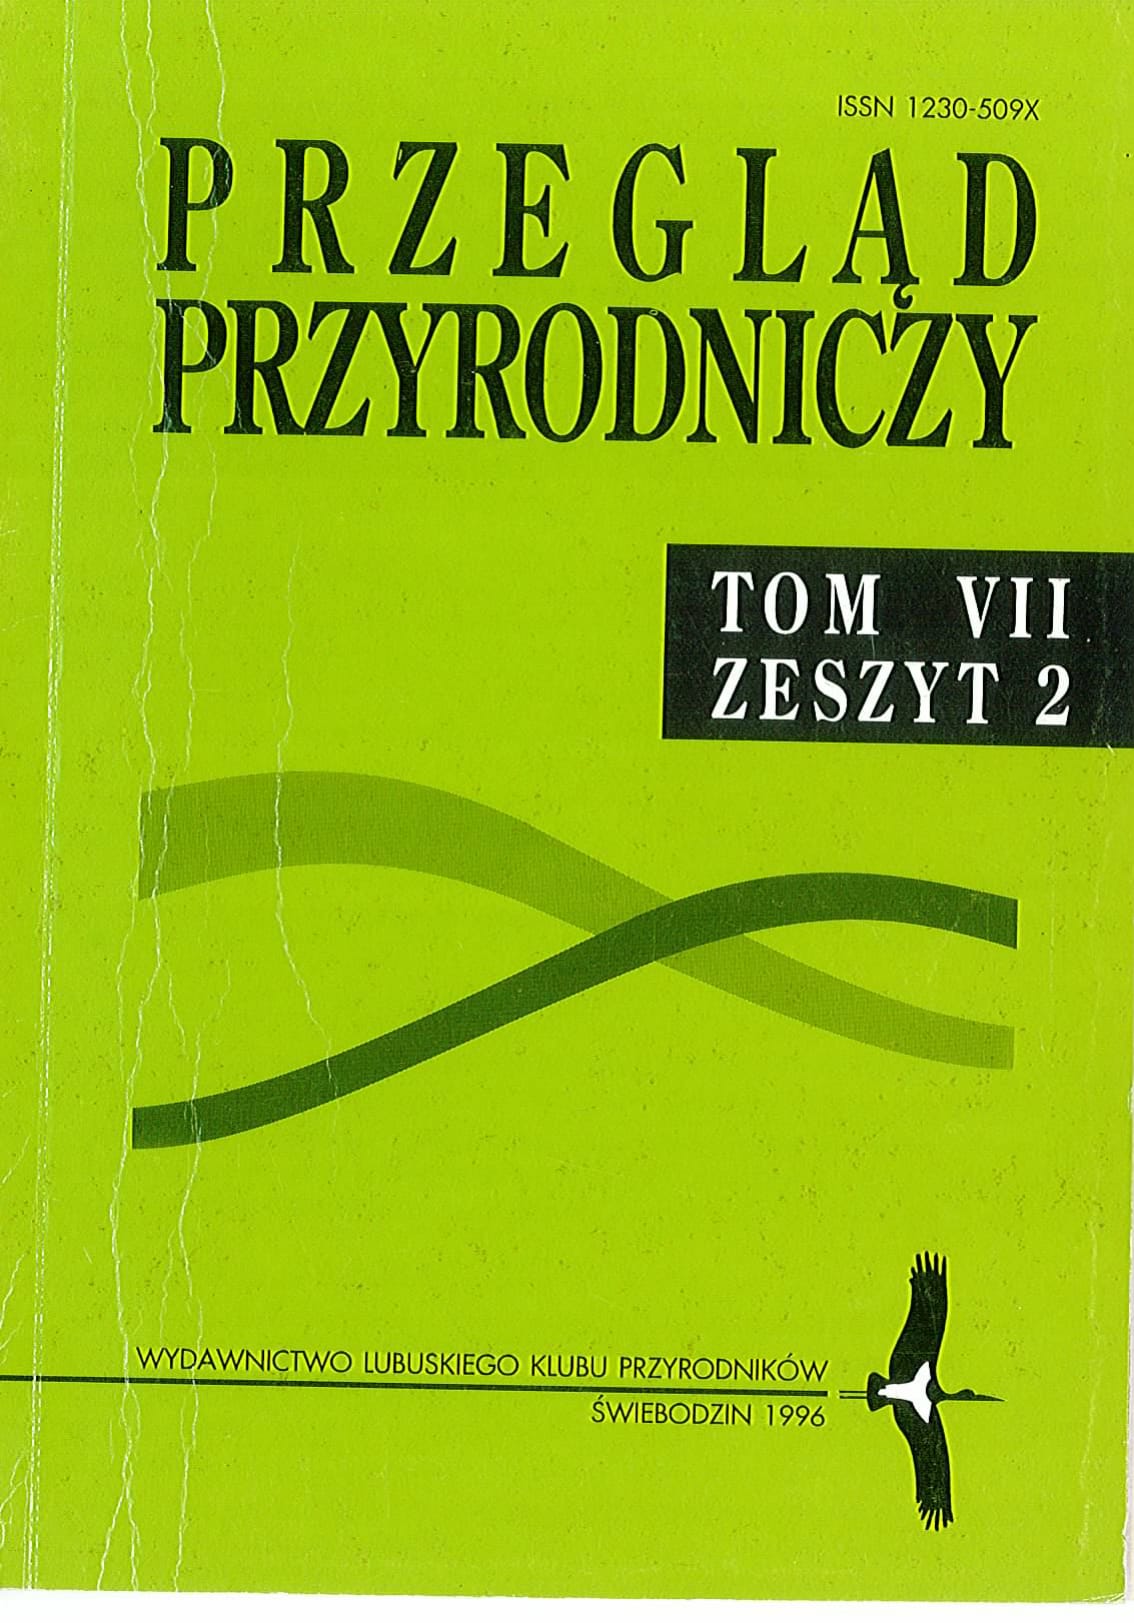 PP T.7 Z.2 1996 1